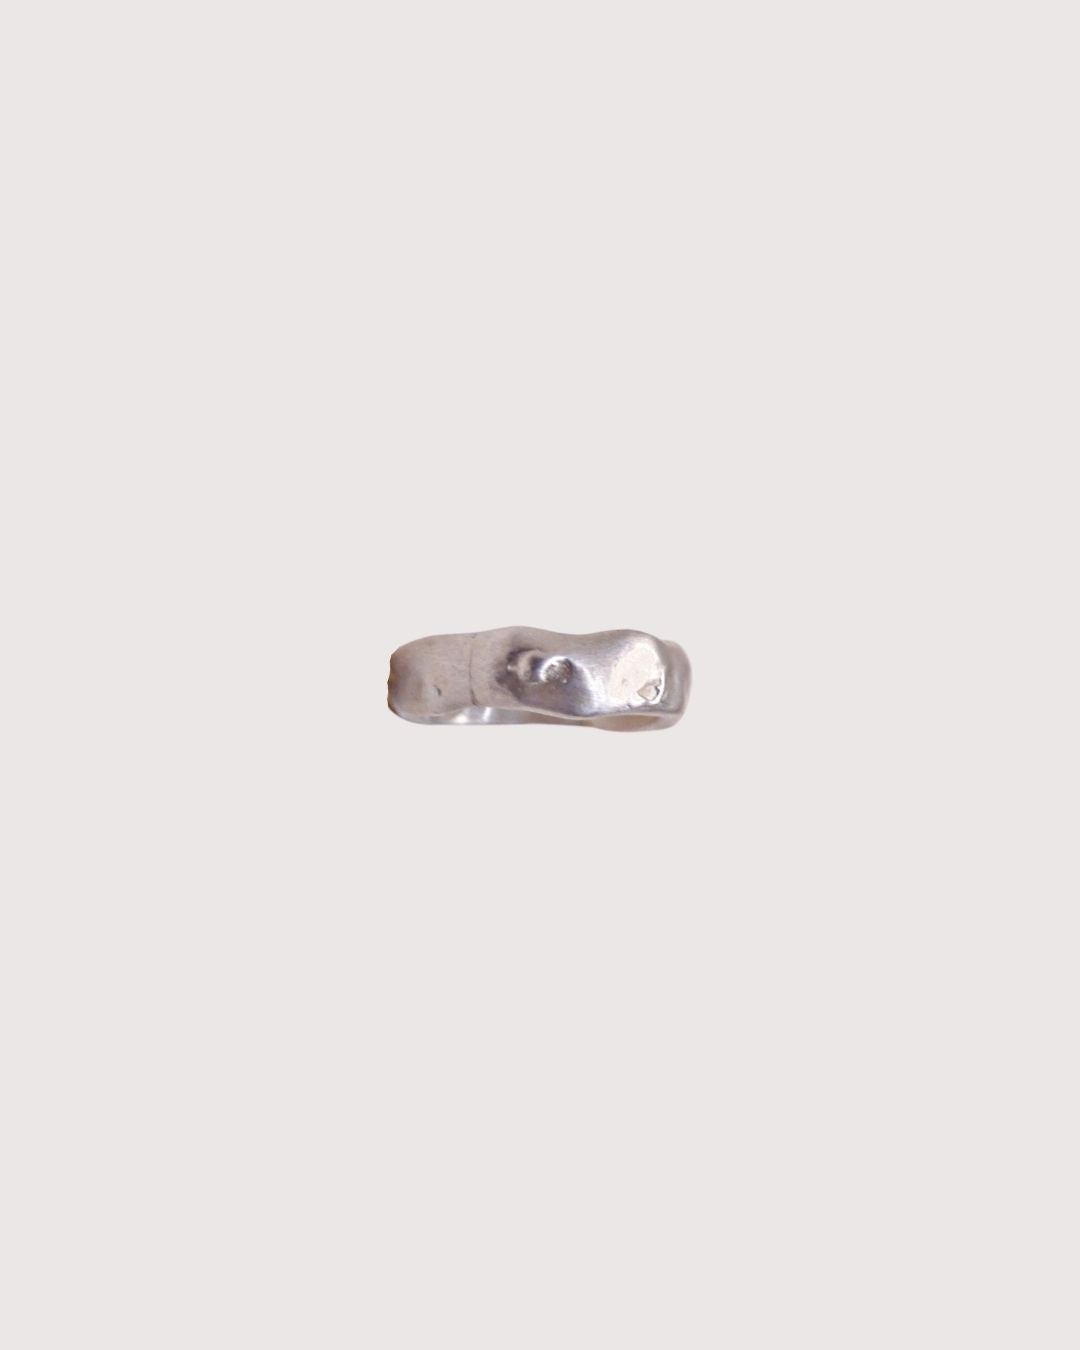 L’anneau moyen de l'Édition 02 a été fabriqué à la main par nos artisans en Espagne, après avoir été dessiné par Barbara à Paris. Une bague minimaliste et intemporelle à la texture unique disponible en laiton recyclé et plaqué or pur (24 carats, 3 microns) et en argent 925.